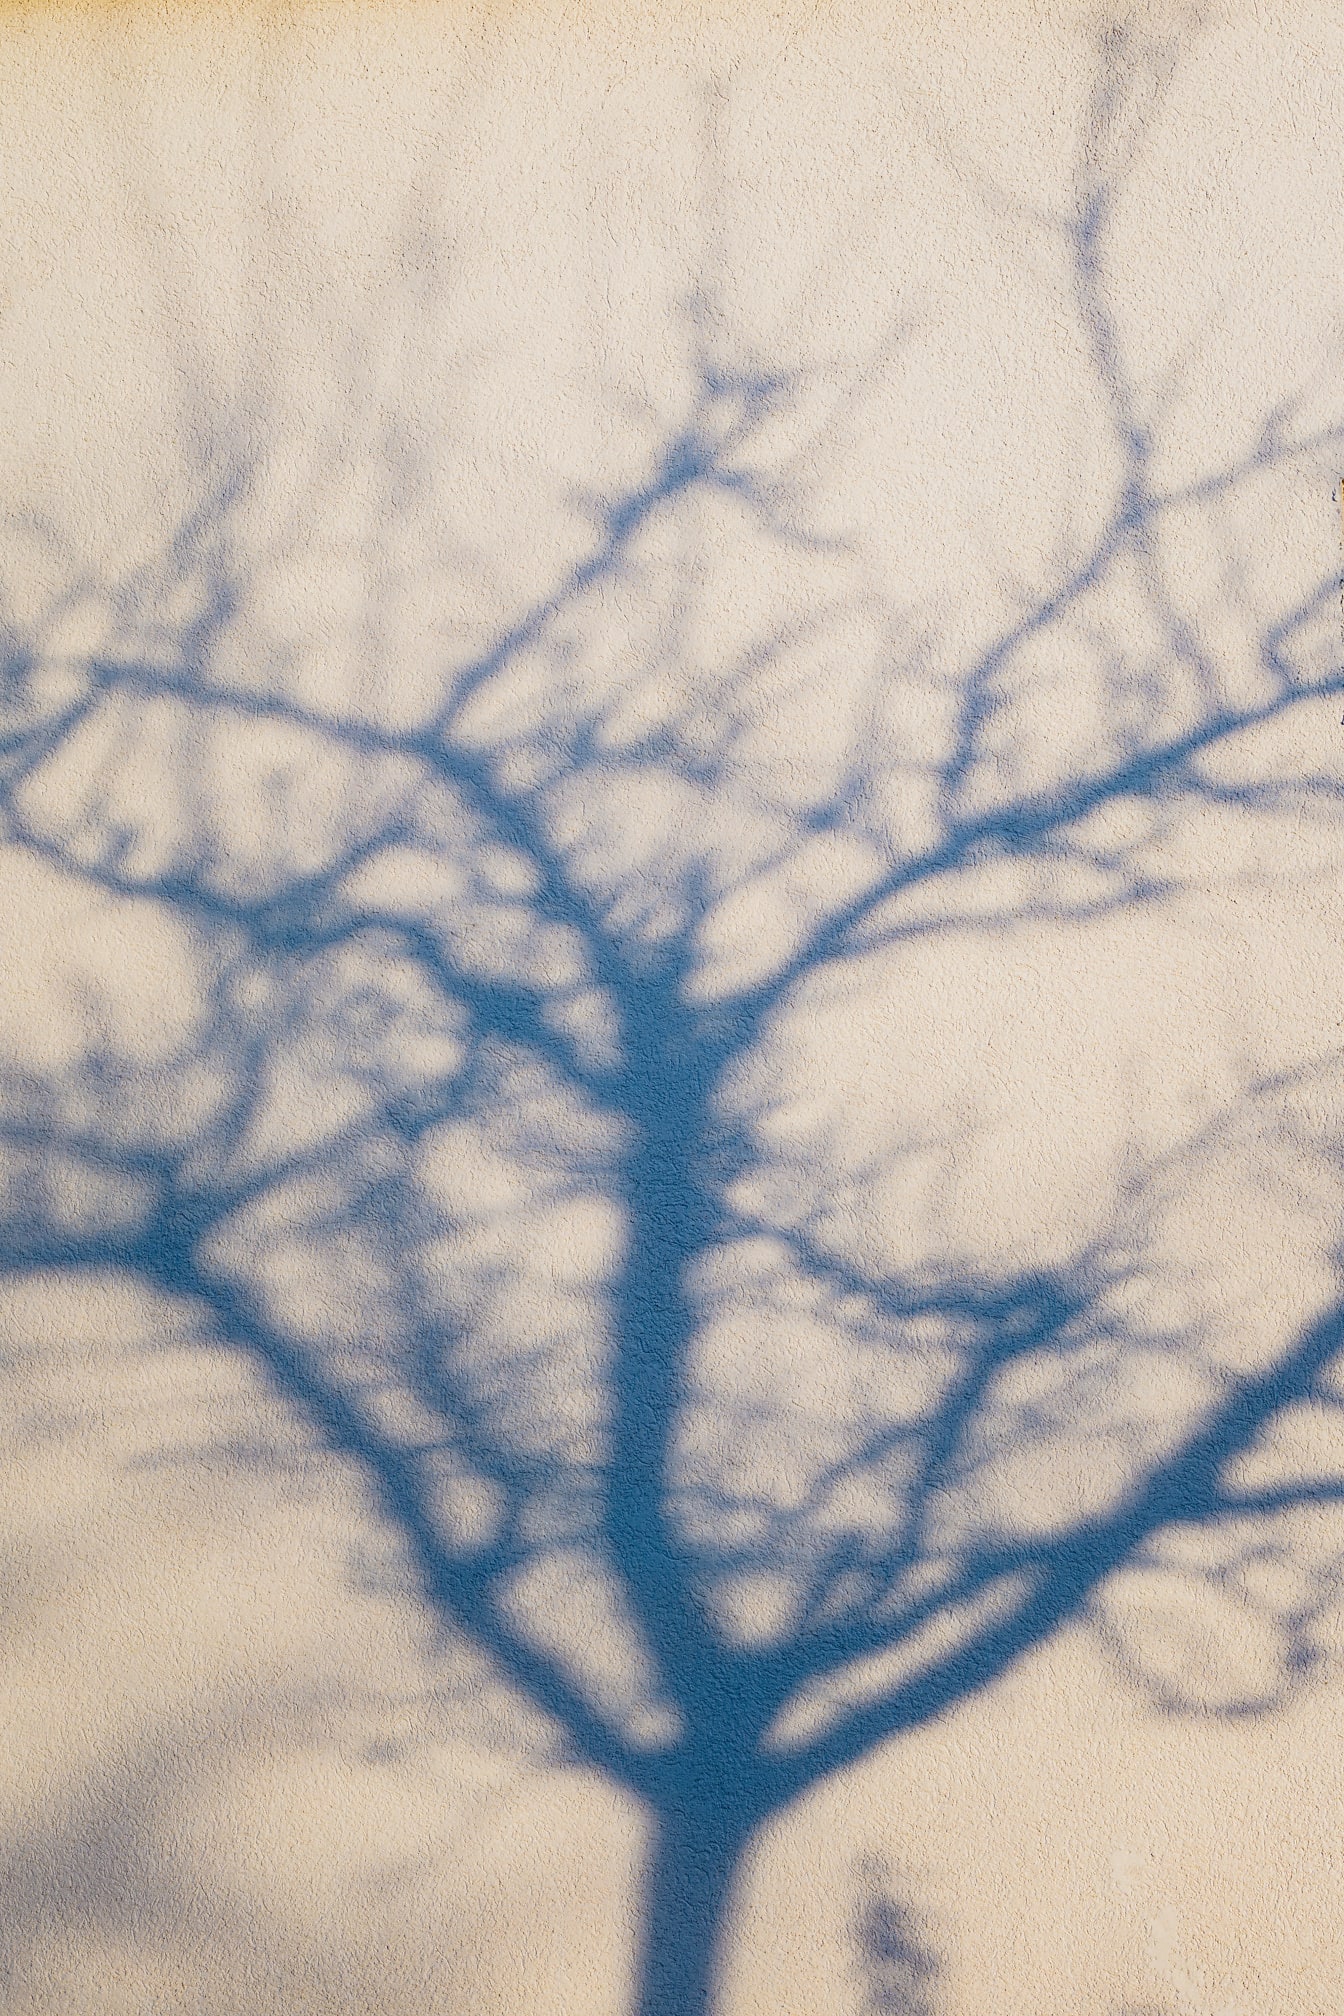 Schatten eines Baumes, Äste auf einer weißlichen Wand